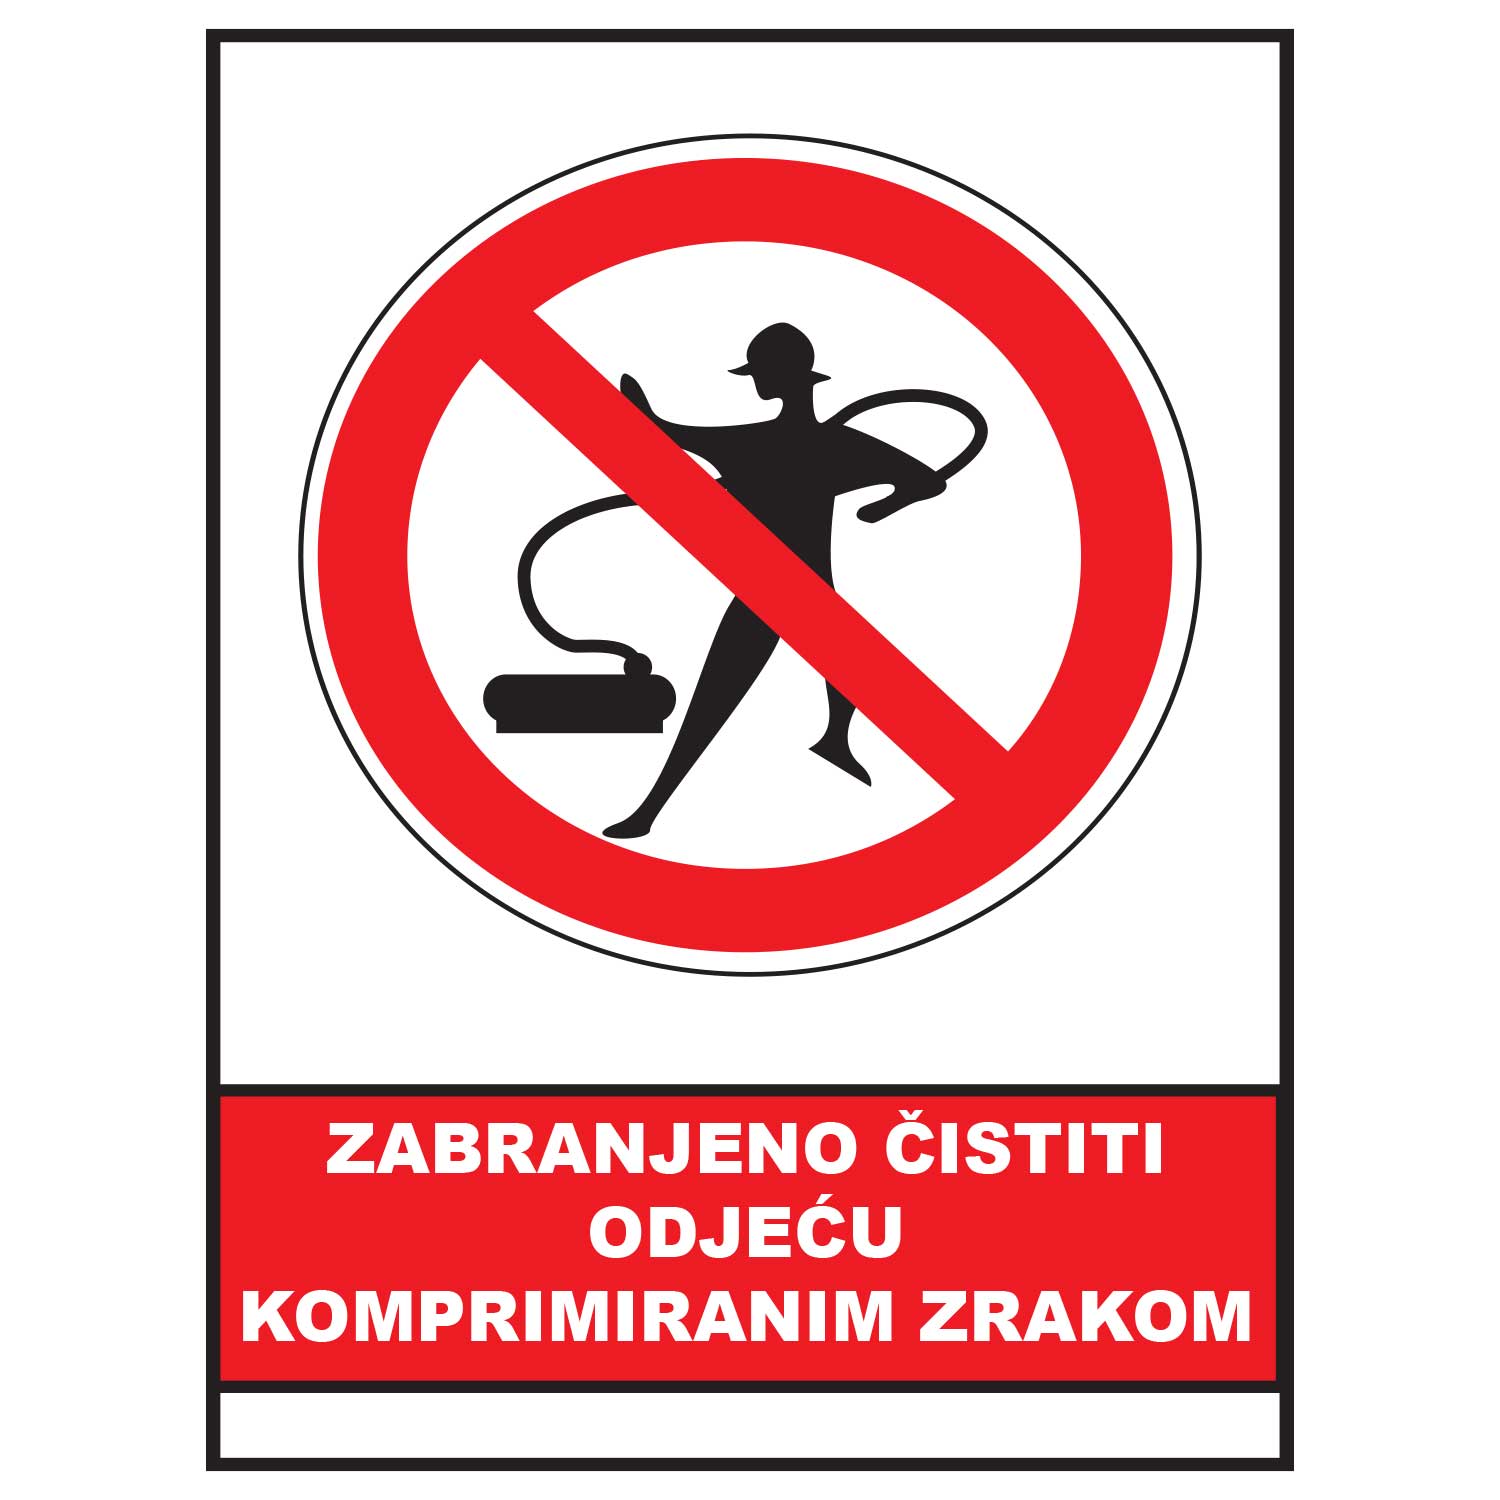 Zabranjeno cistiti odjecu komprimiranim zrakom, znak zabrane, ZS0046